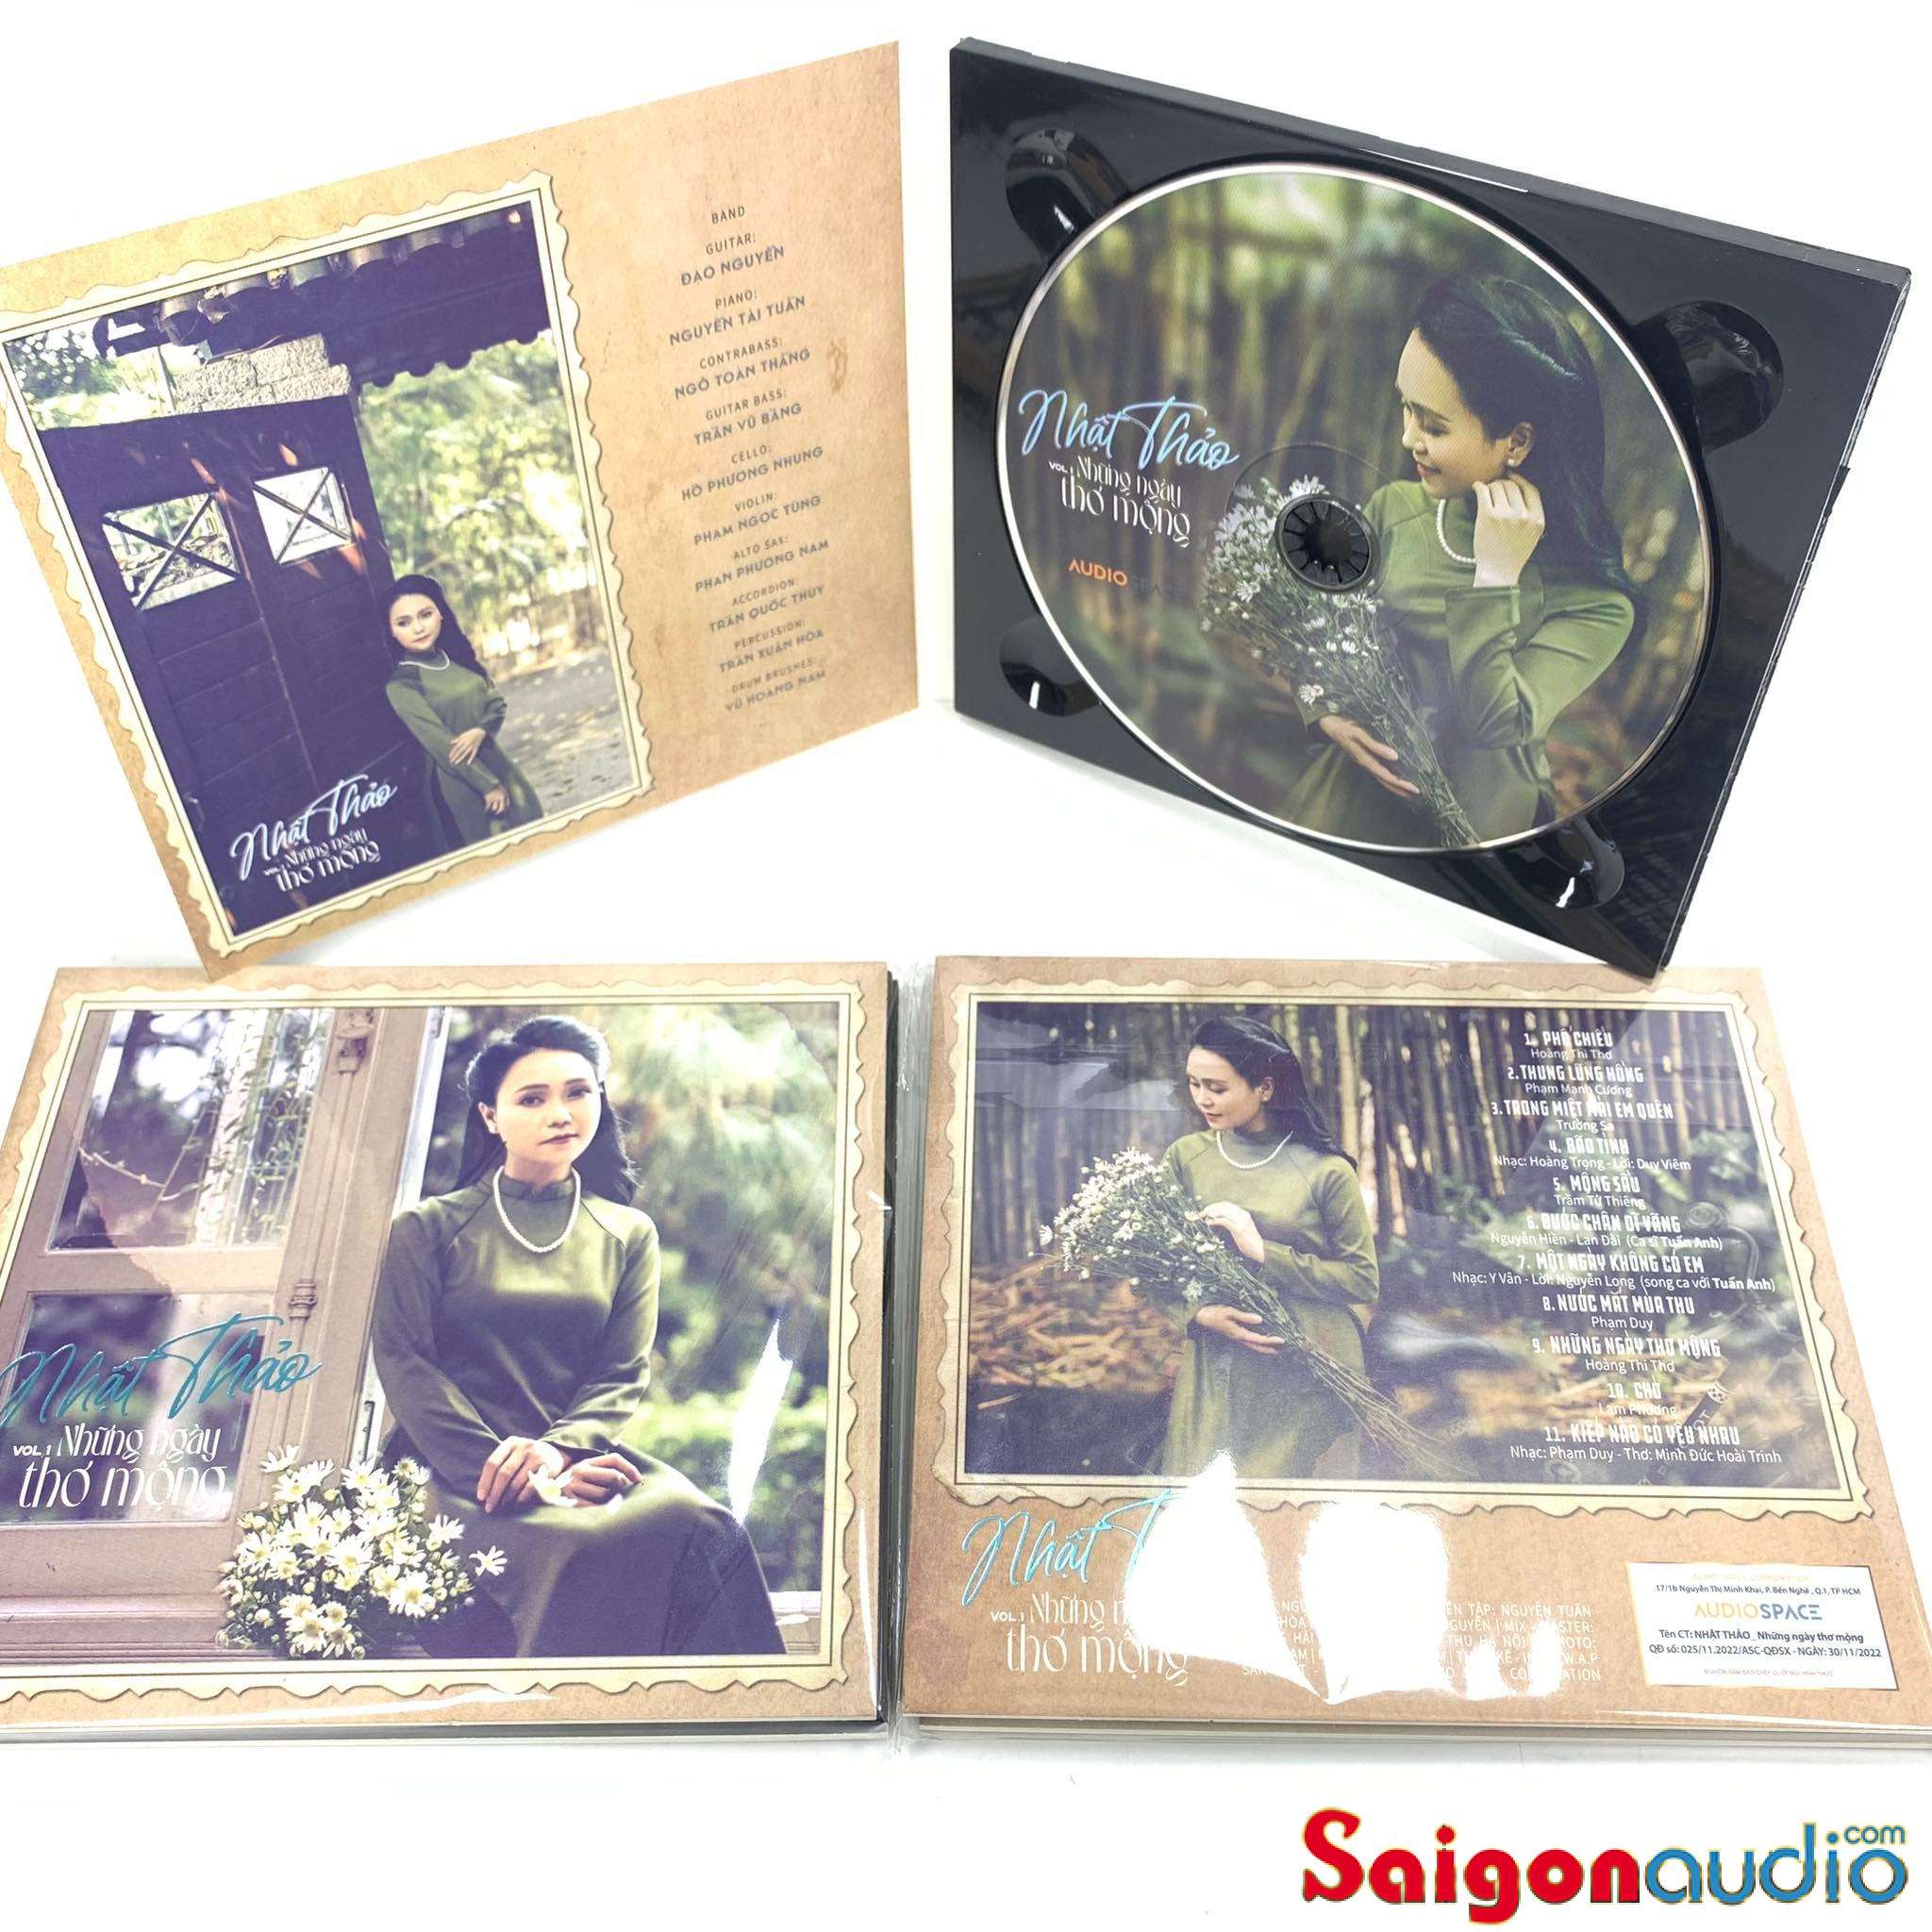 Đĩa CD nhạc gốc Nhật Thảo - Những Ngày Thơ Mộng (Free ship khi mua 2 đĩa CD cùng hoặc khác loại)